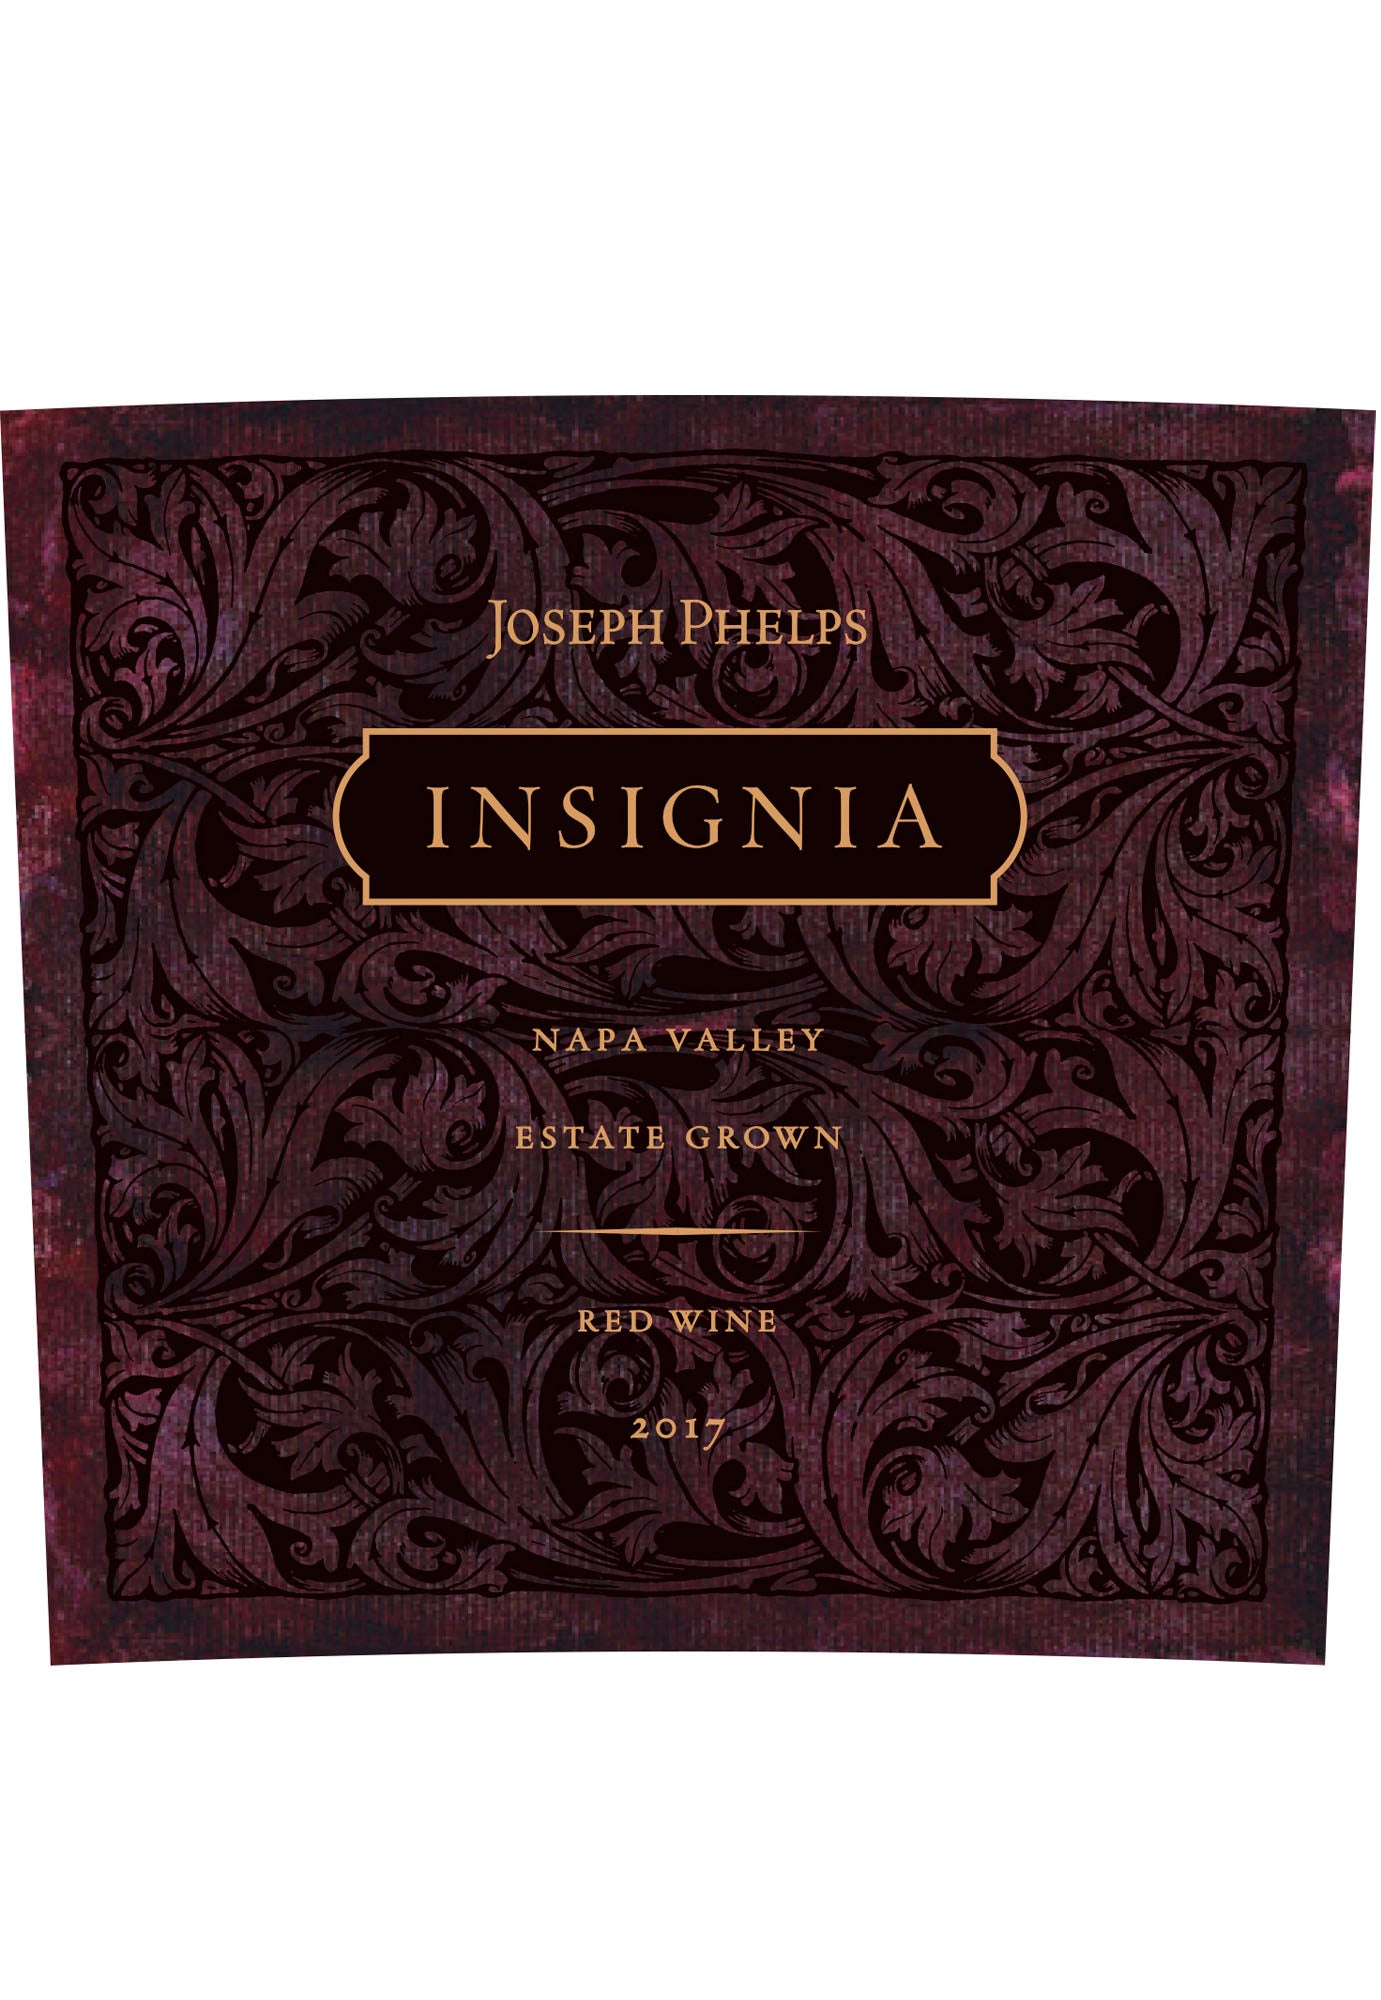 Joseph Phelps 'Insignia' 2018 - 3 Litre Bottle